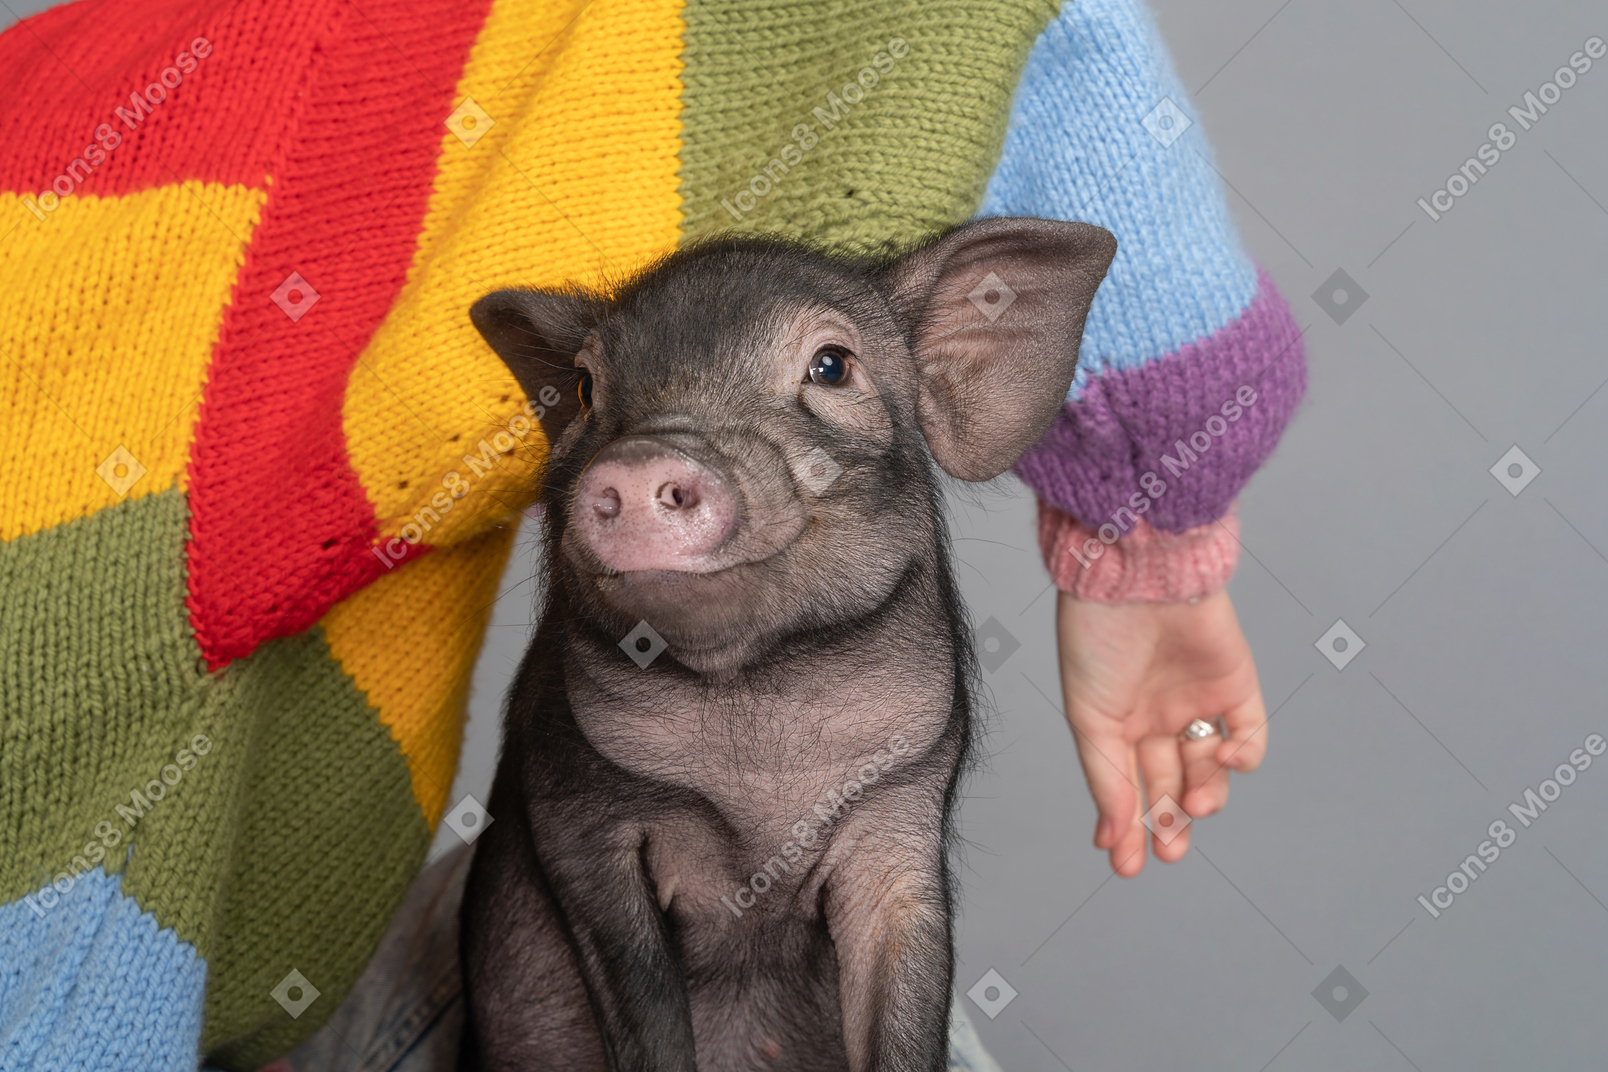 A female wearing a colorful sweater sitting beside a cute piggy